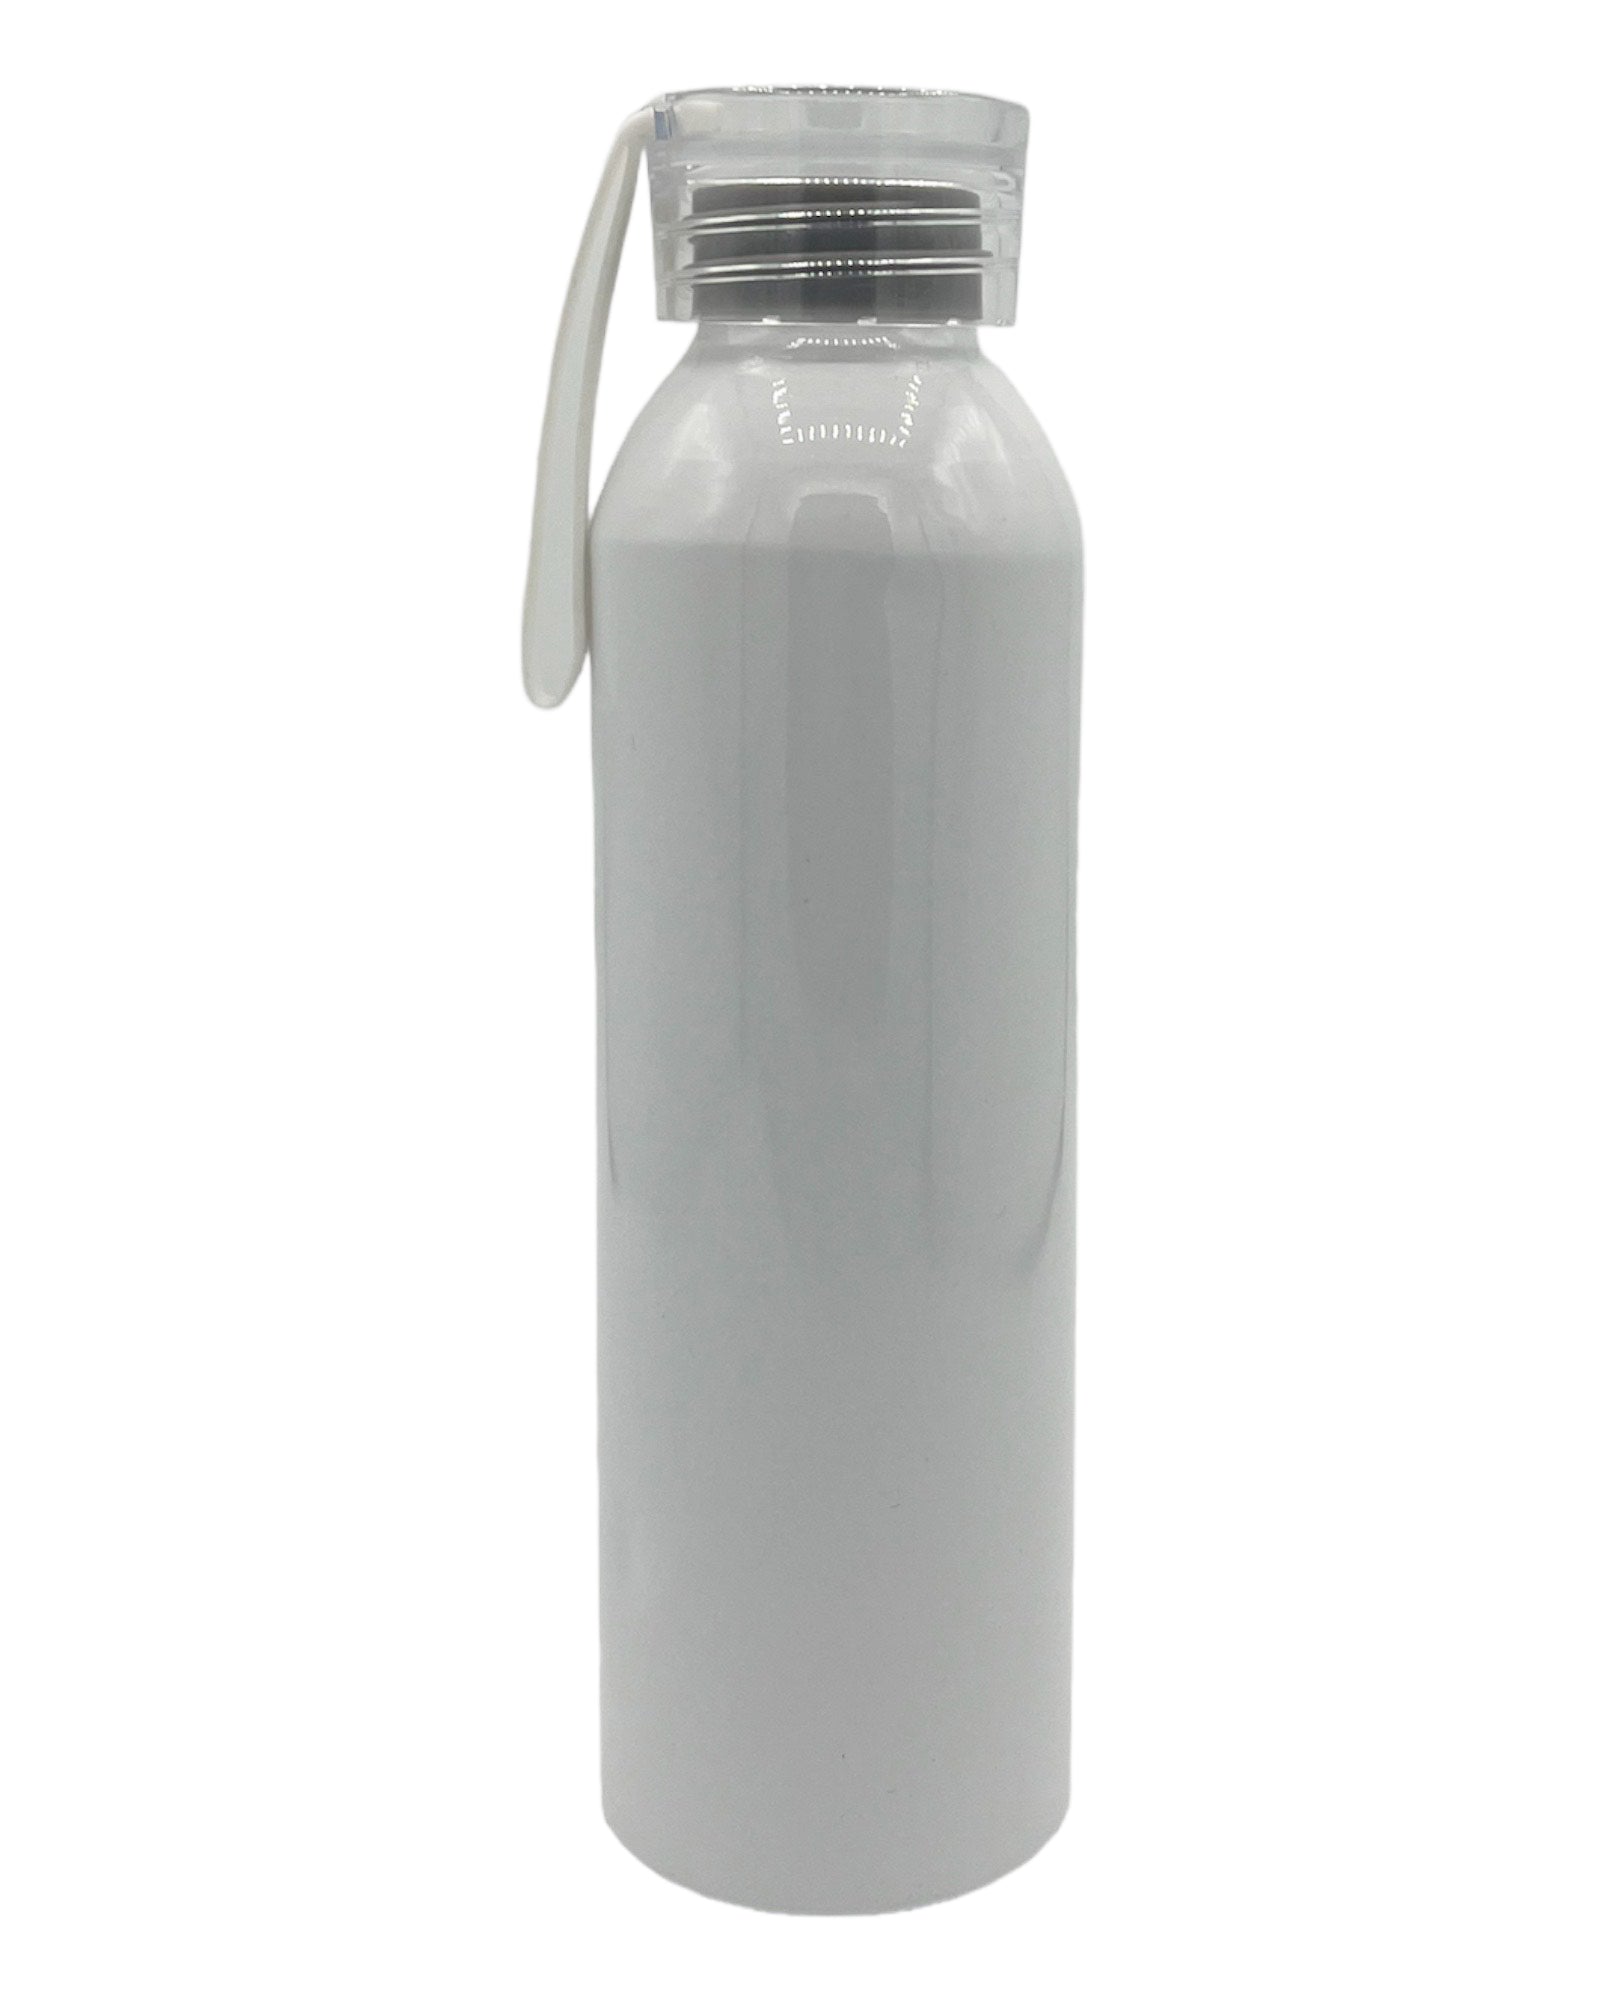 Trinkflasche aus Aluminium 600ml in 7 Farben - Sublishop.net GmbH